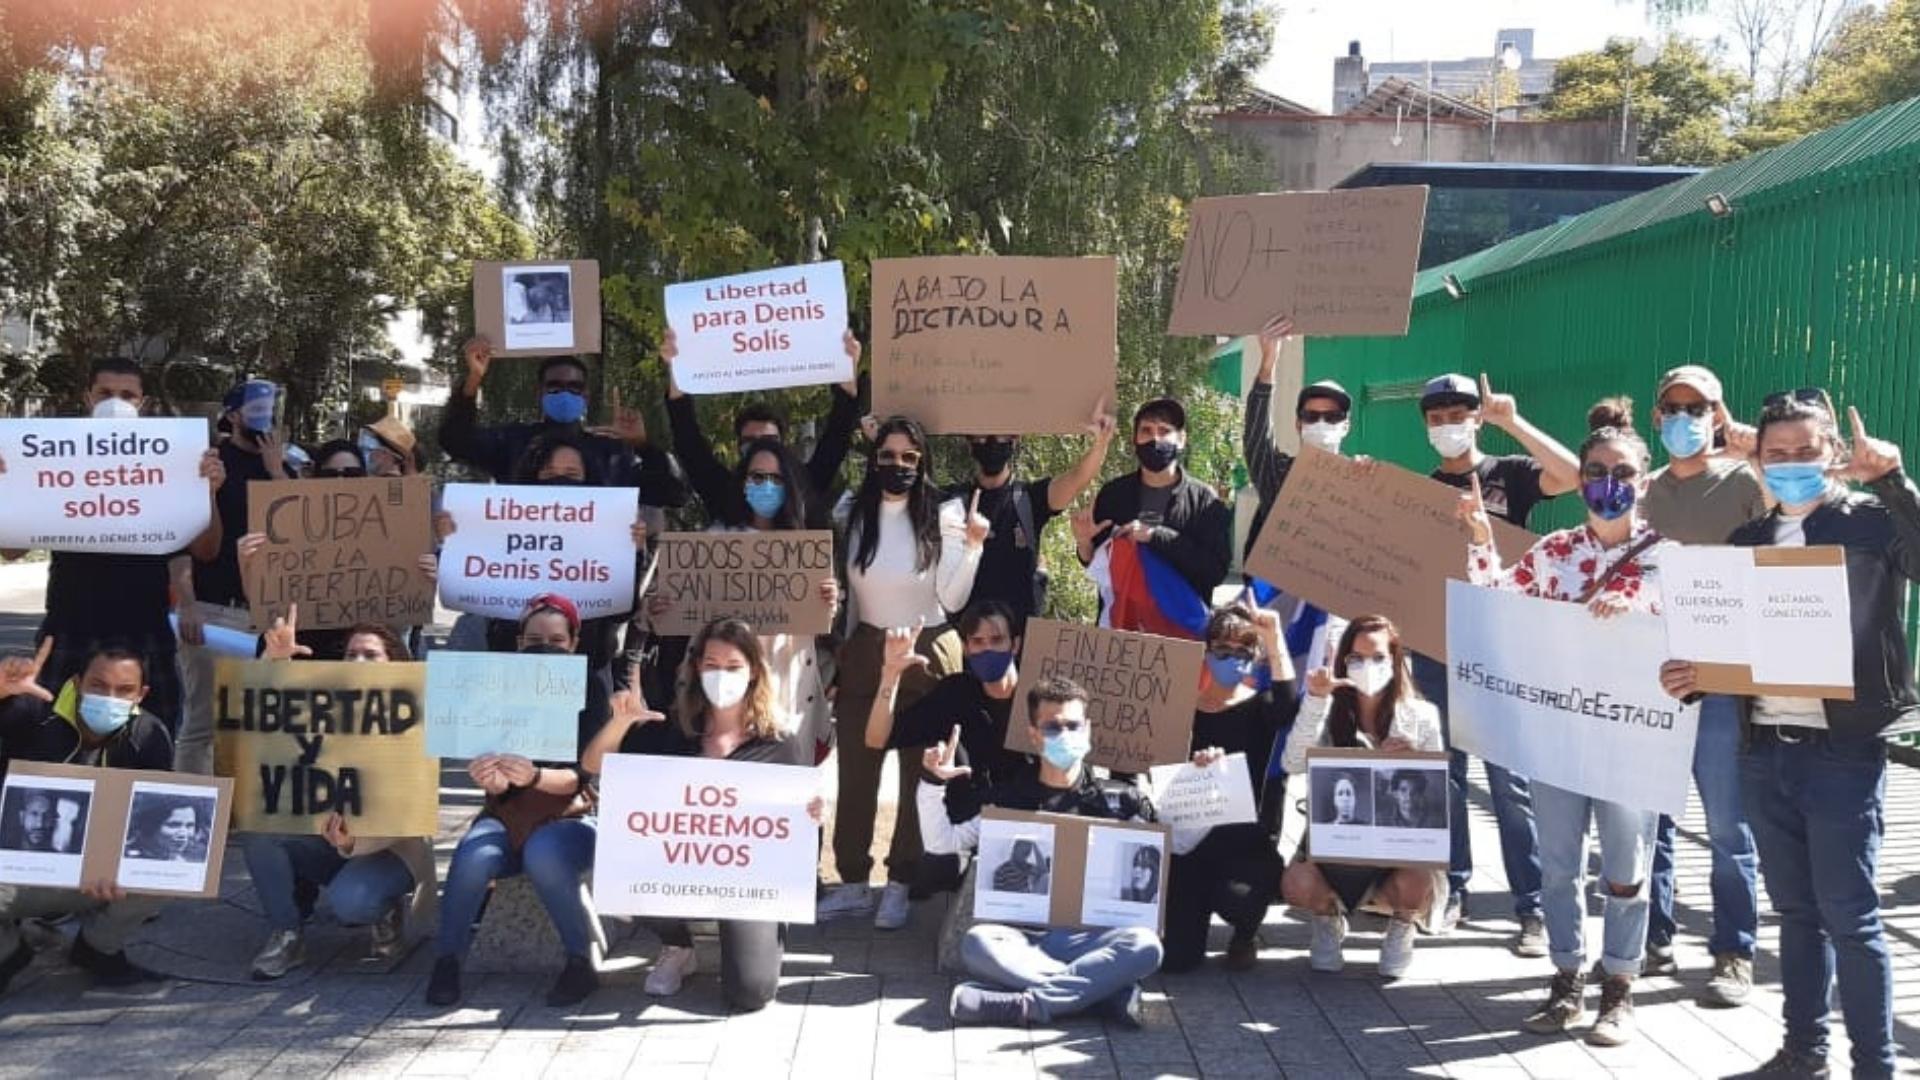 Imagen de referencia de otra manifestación de jóvenes cubanos frente a Embajada en México